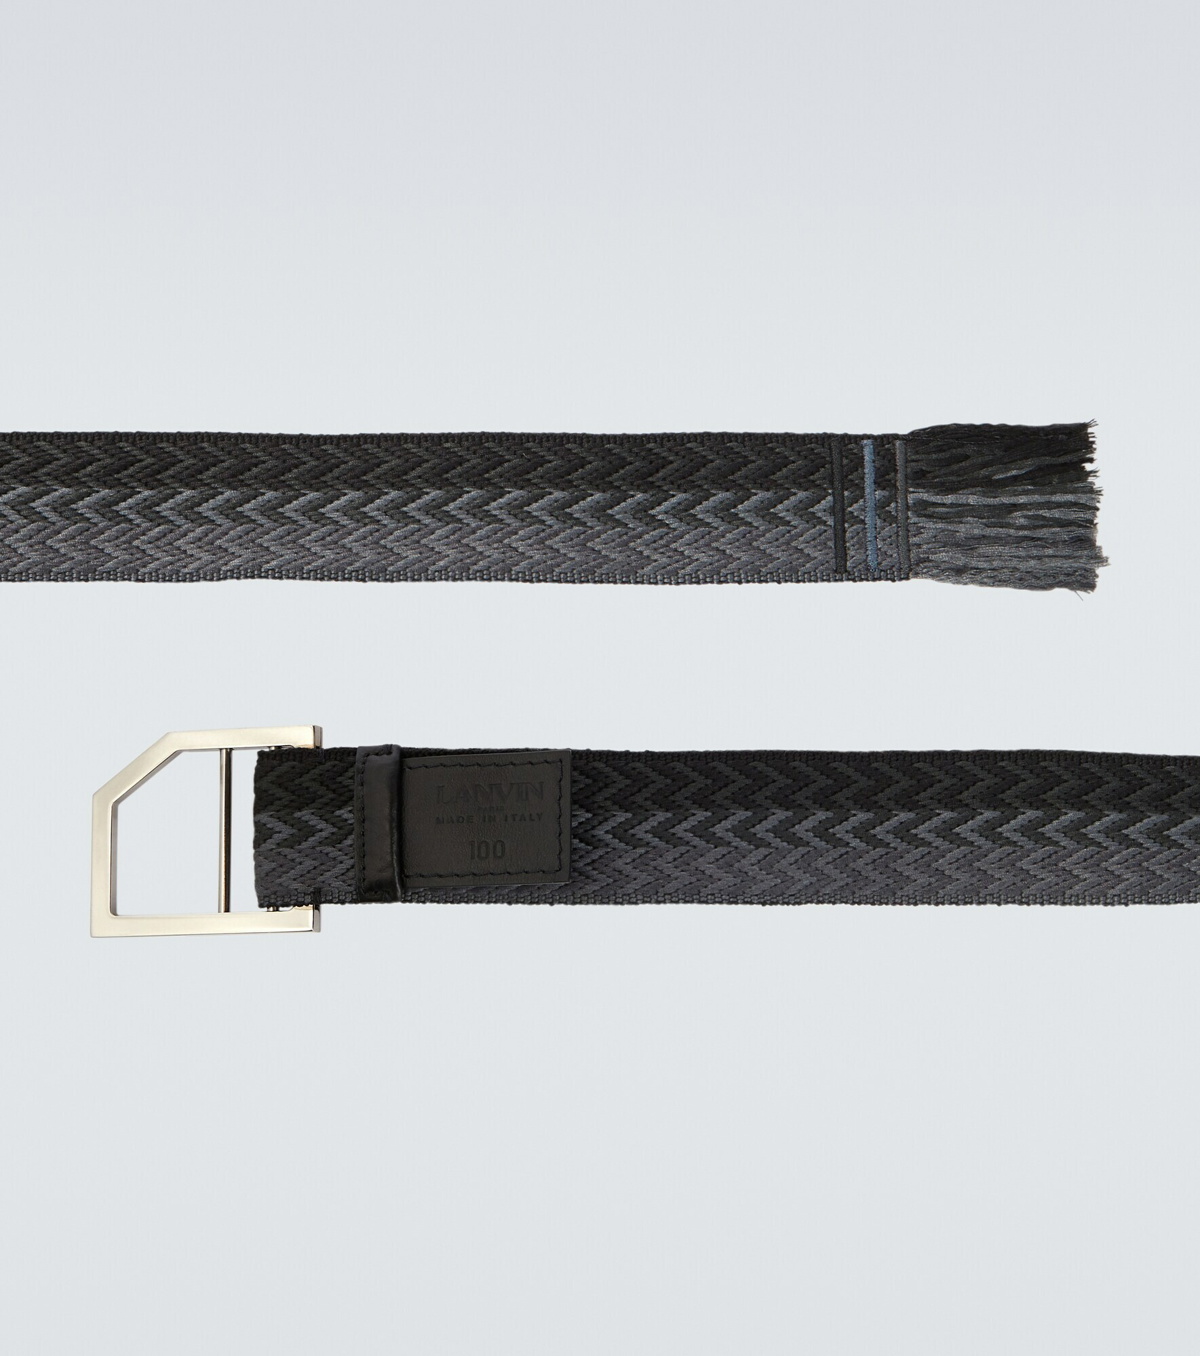 adidas Golf Braided Stretch Belt - Black